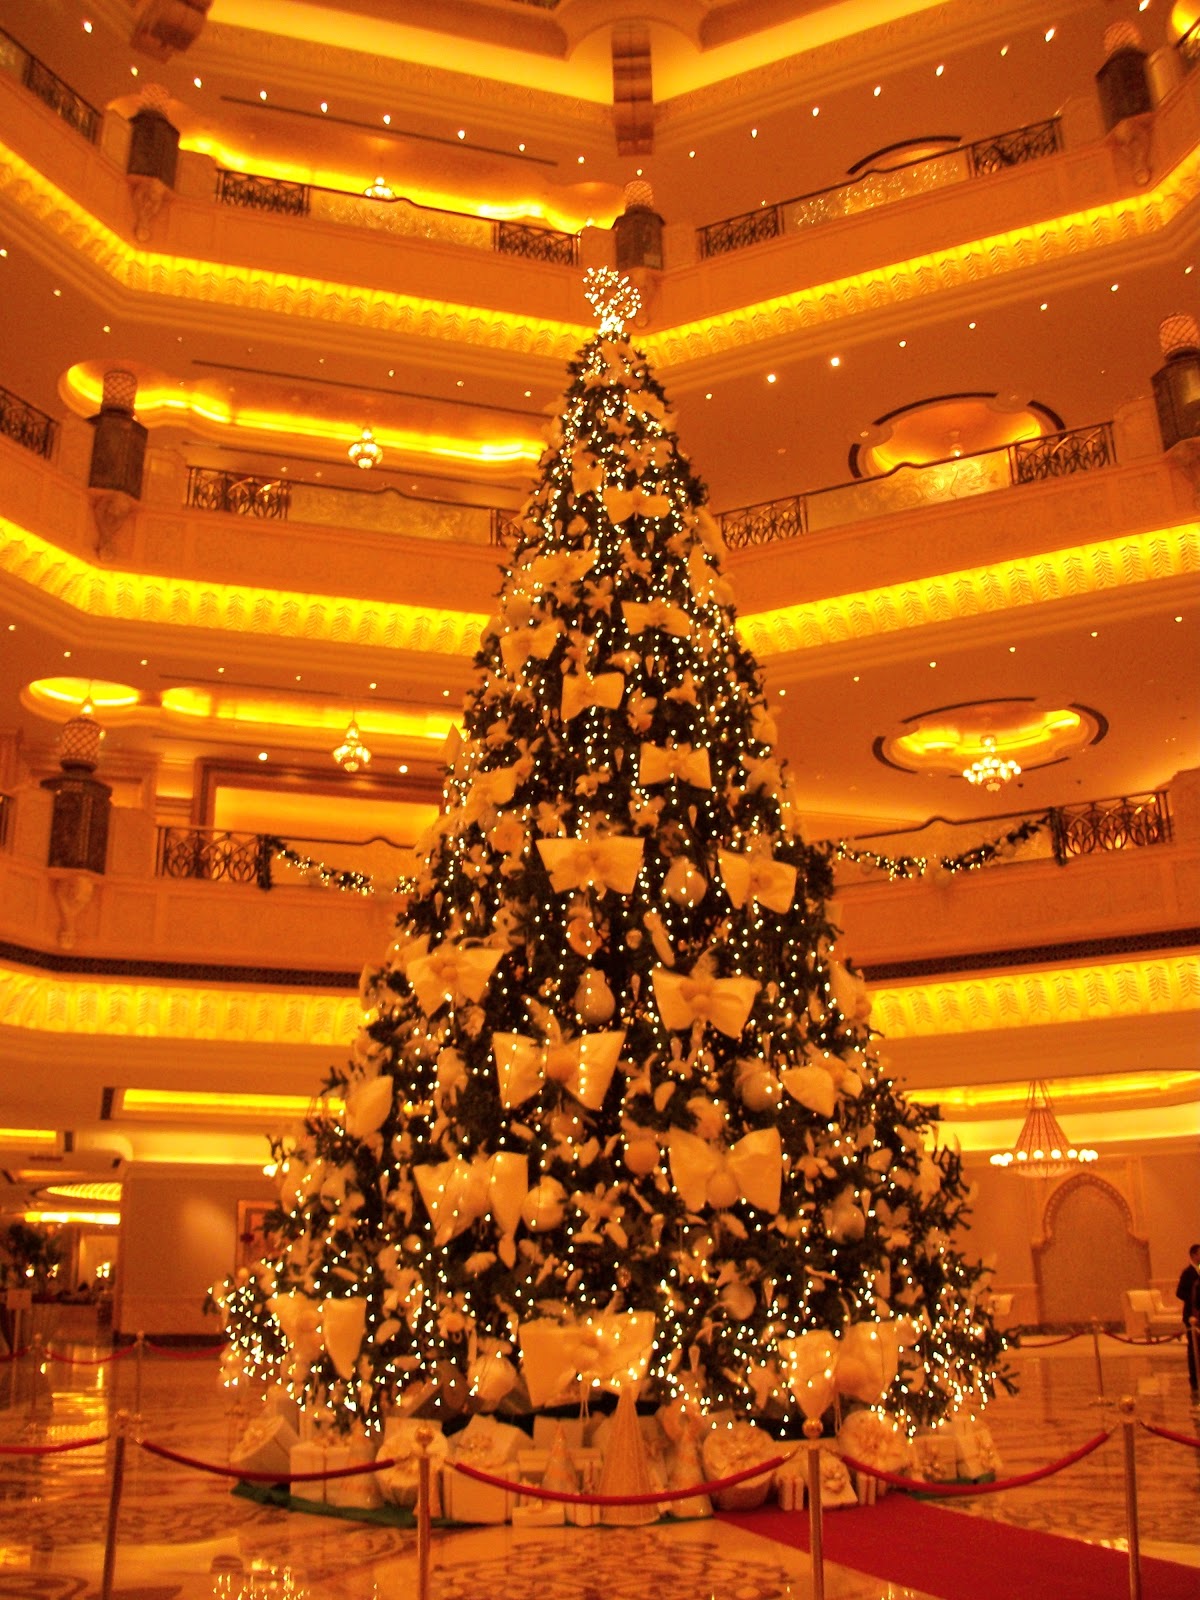 Abu Dhabi Adventures: The Christmas Trees of Abu Dhabi